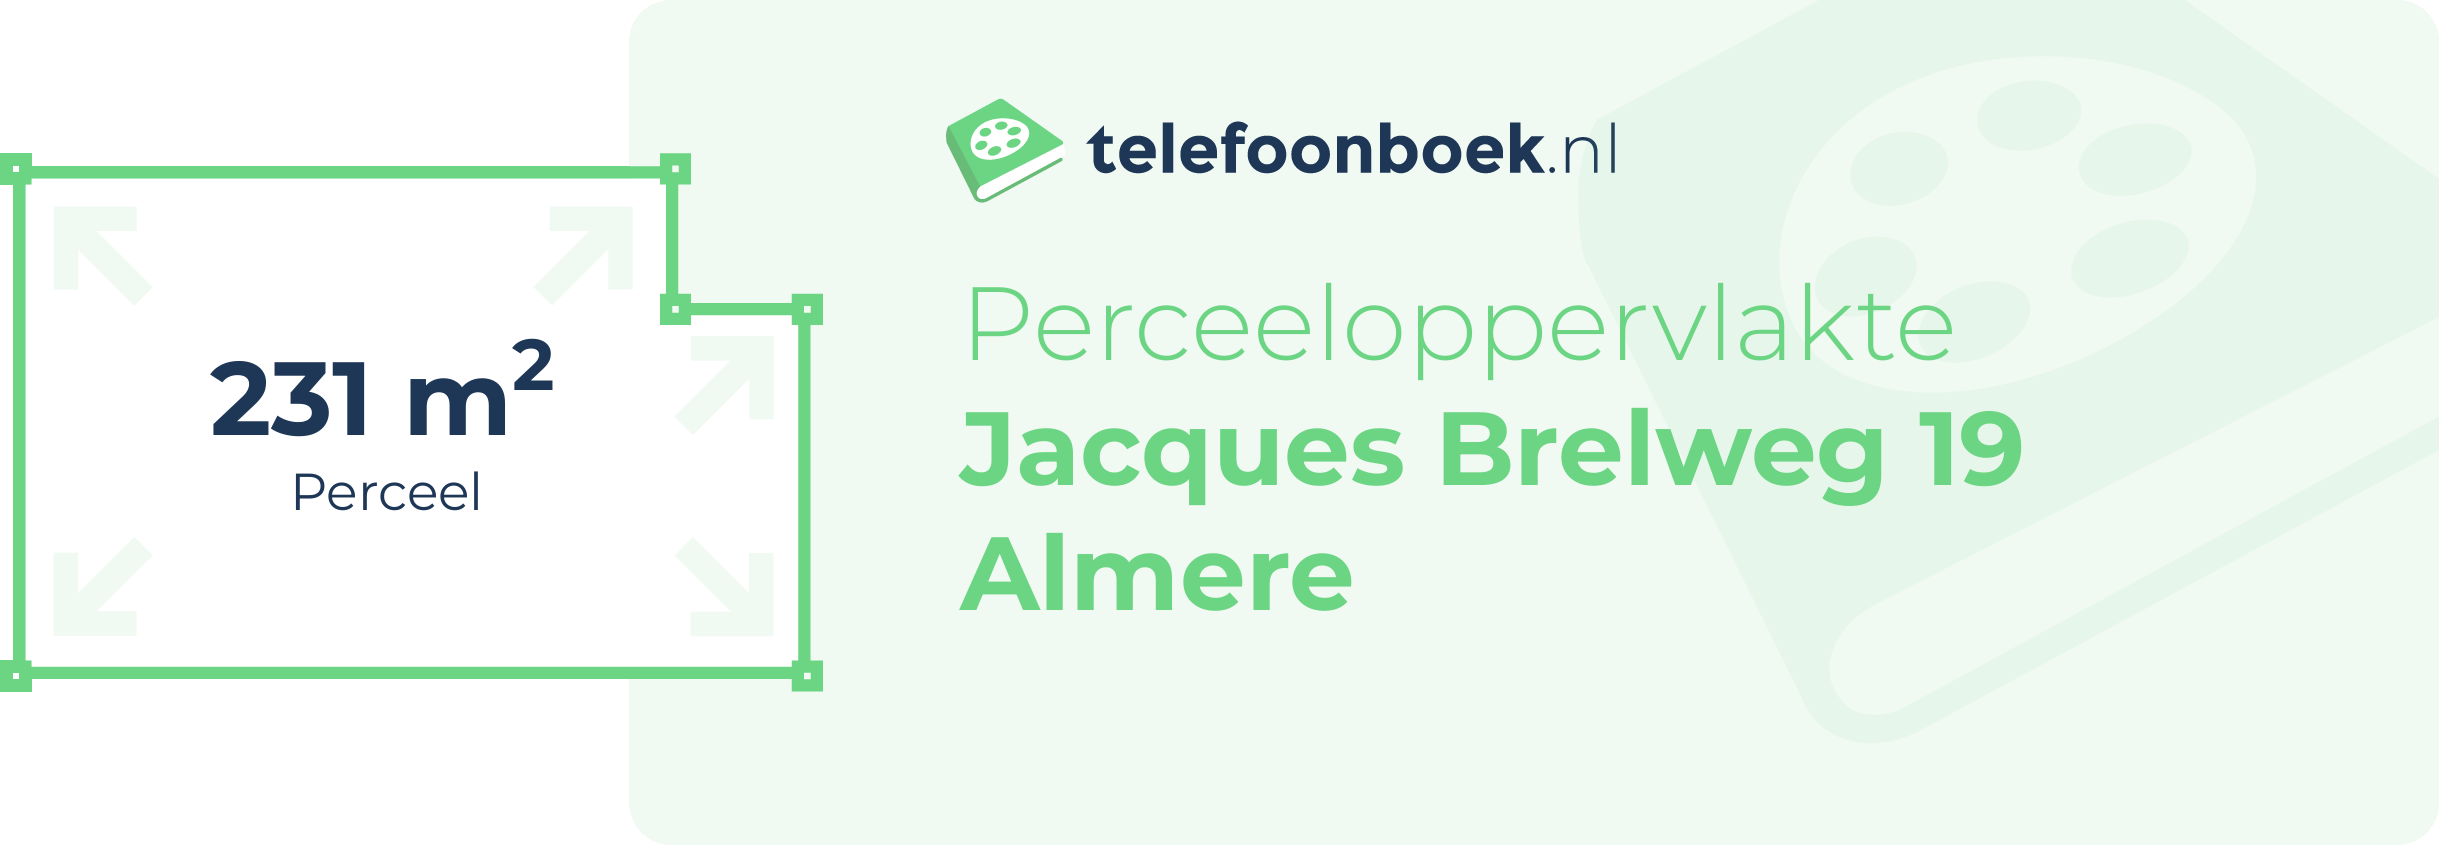 Perceeloppervlakte Jacques Brelweg 19 Almere